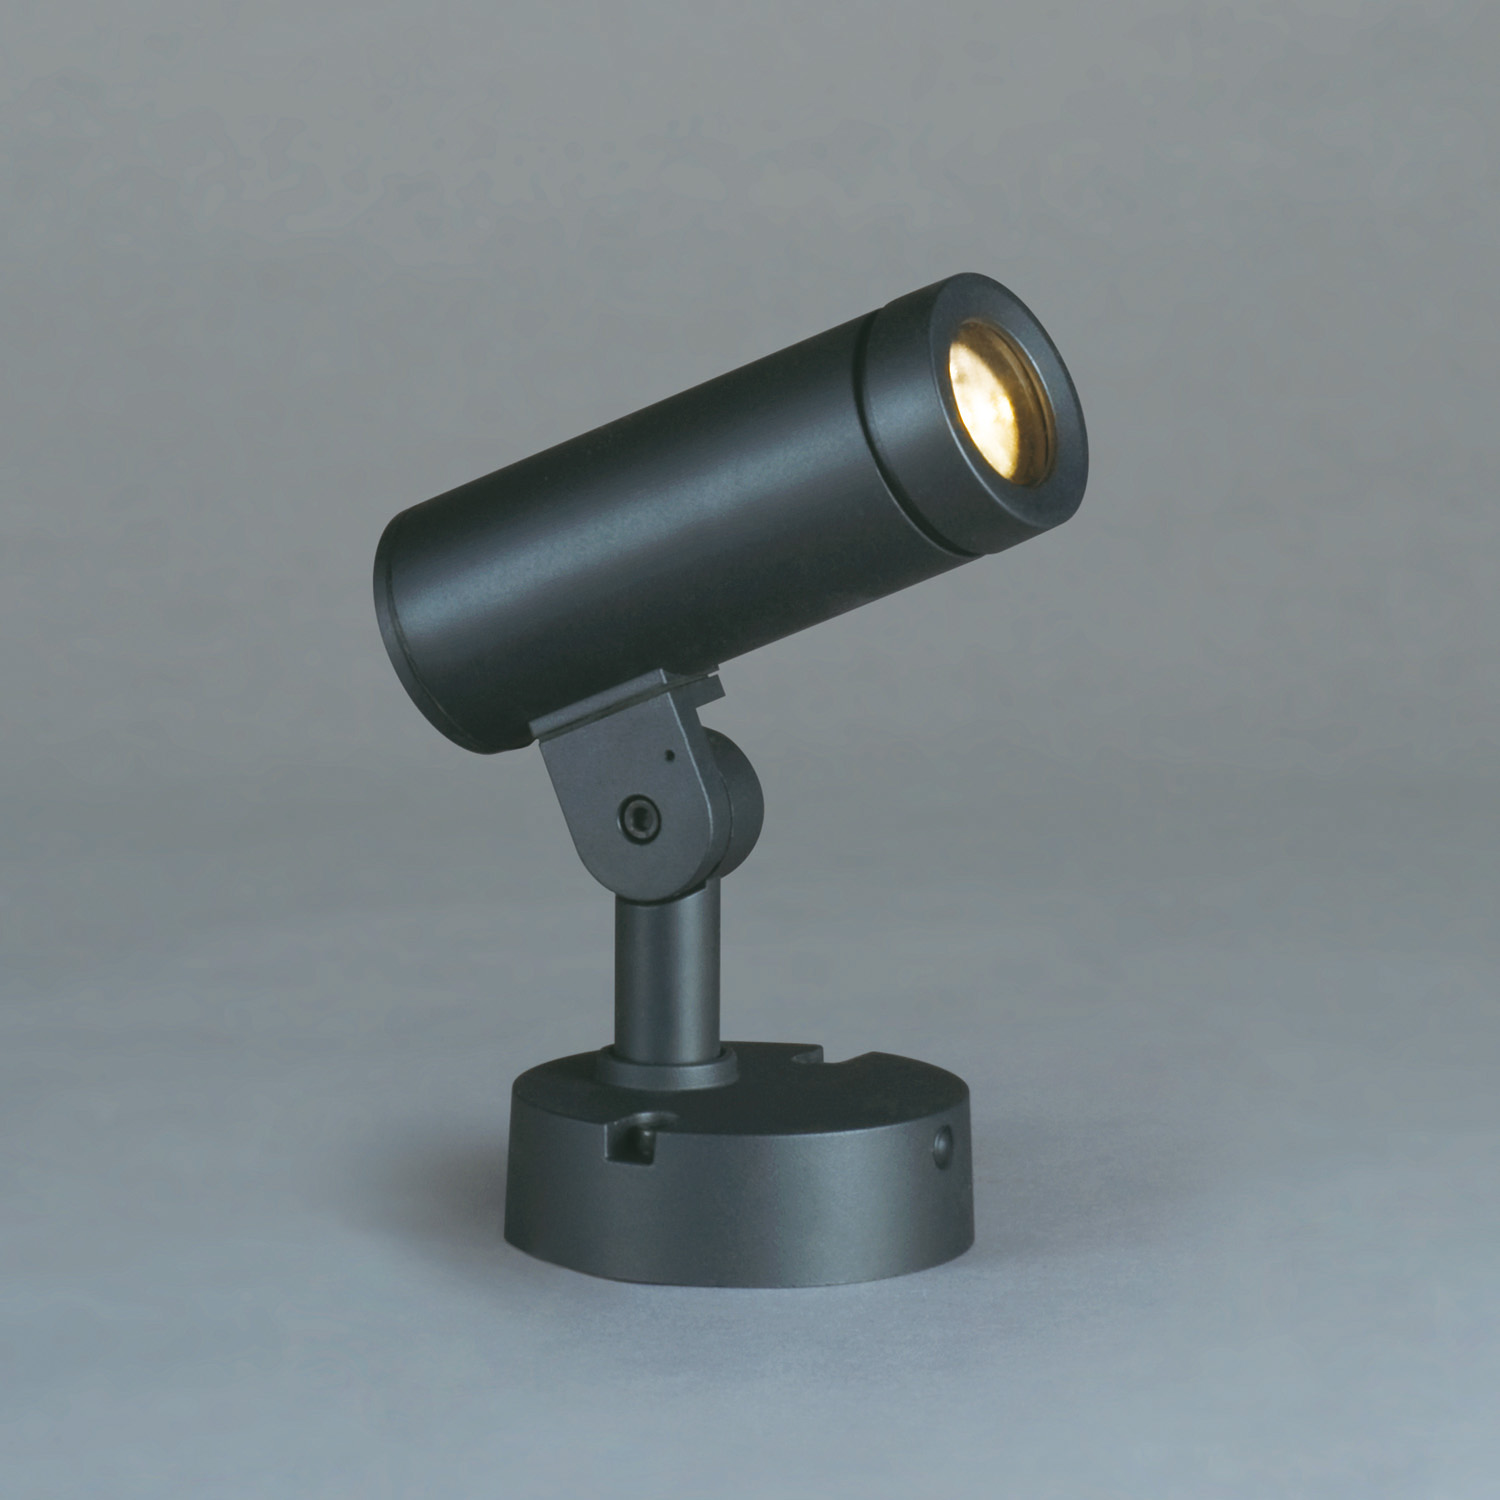 山田照明 山田照明 Compact Spot Neo（コンパクト・スポット・ネオ） 屋外用スポットライト 黒色 LED（昼白色） 36度 AD-3144-N 